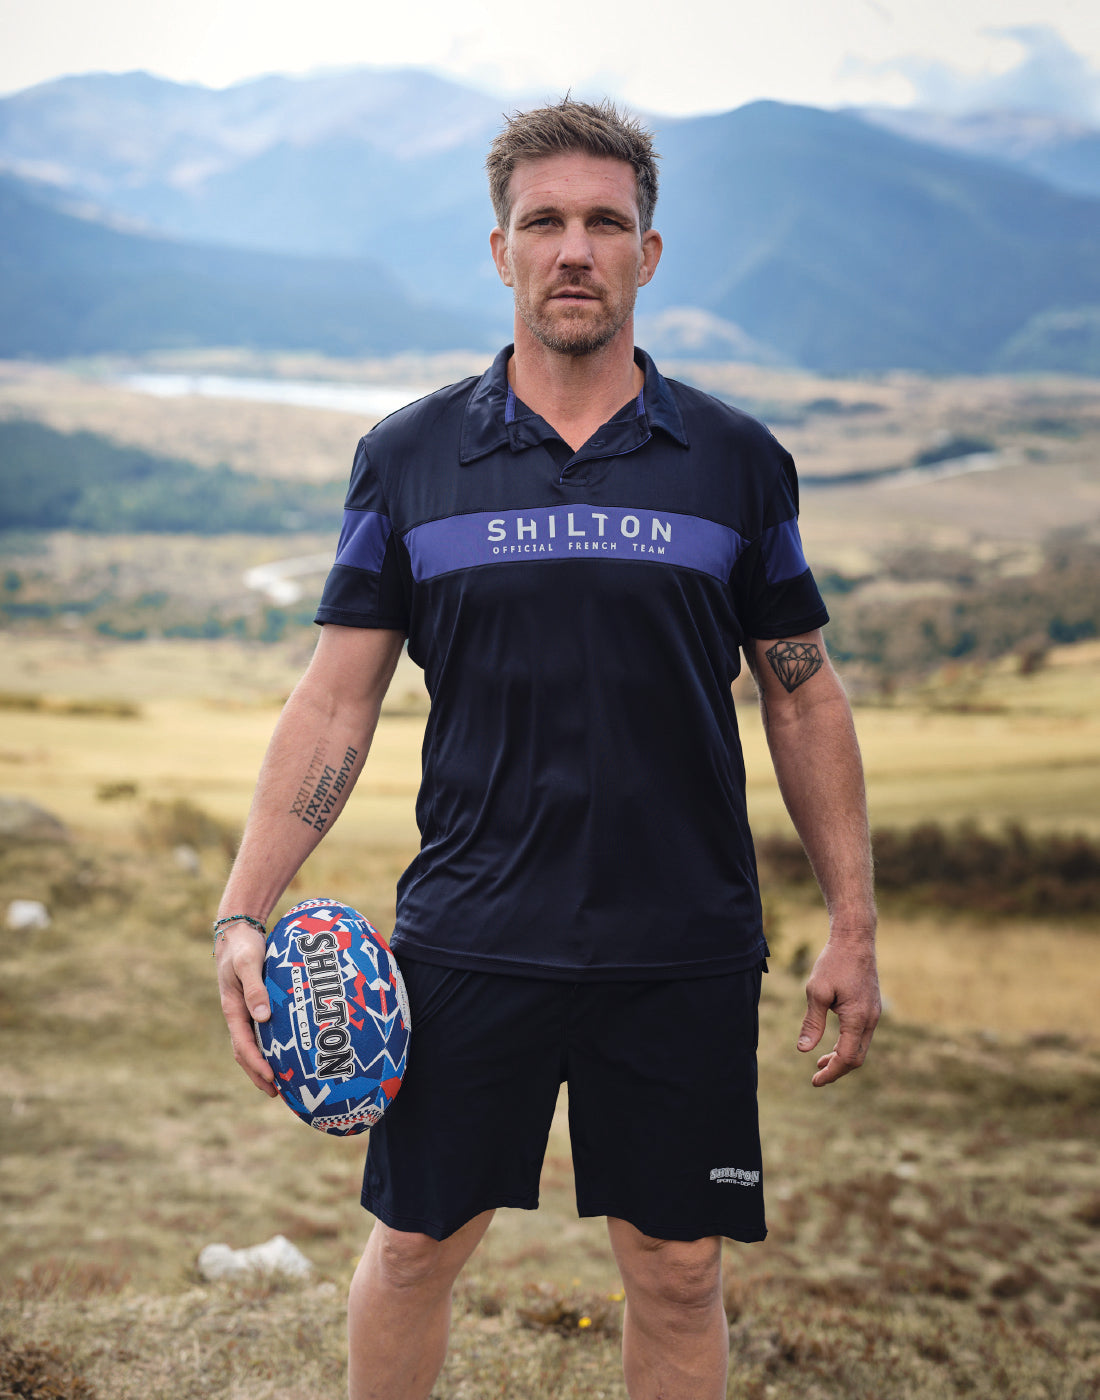 Shilton : marque de vetement rugby - Boutique rugby - Shilton